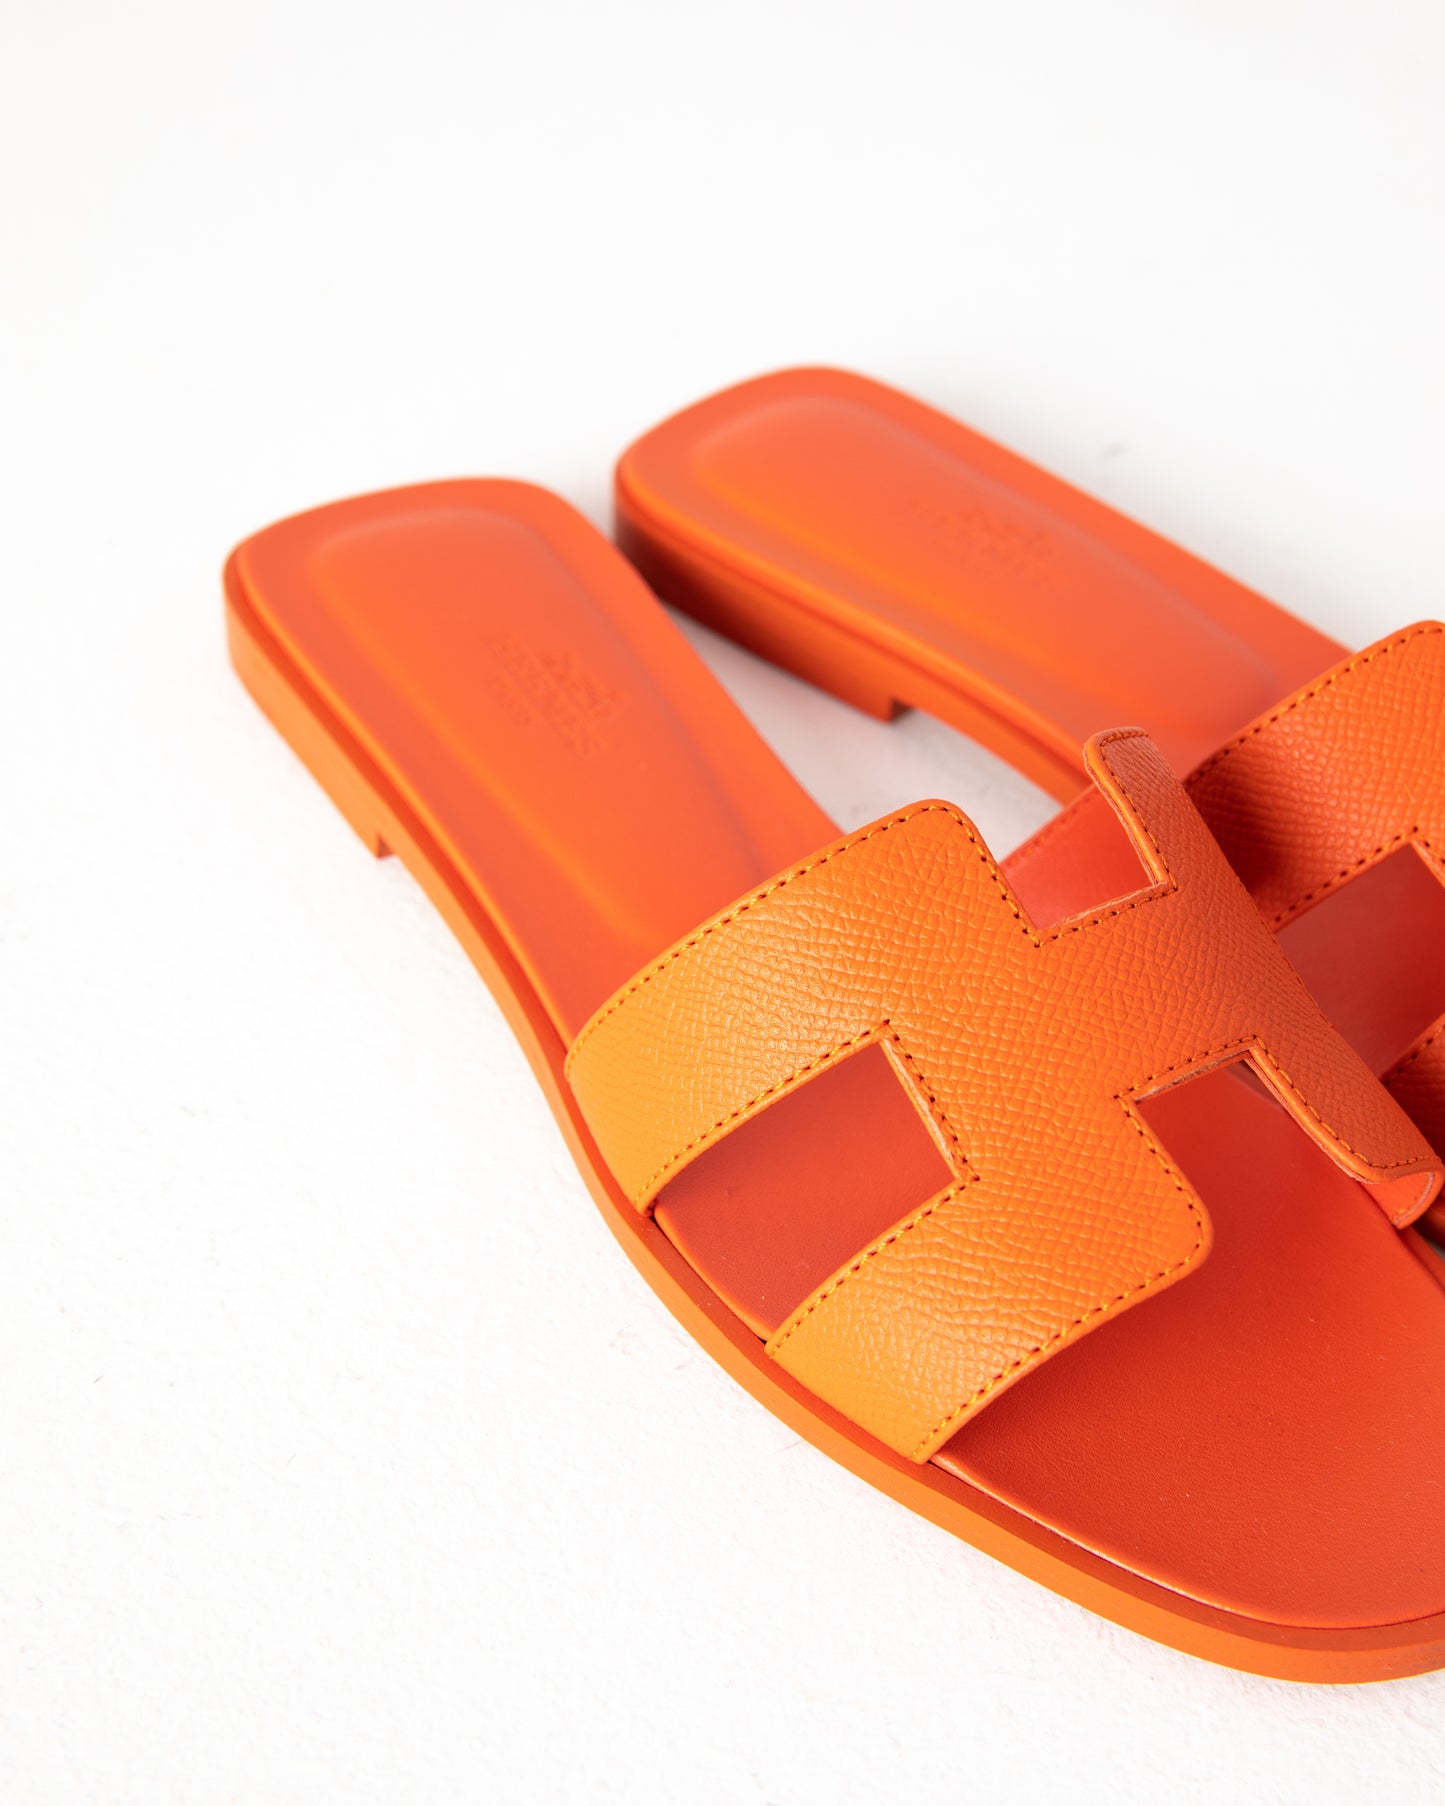 Oran Sandal in Epsom Orange